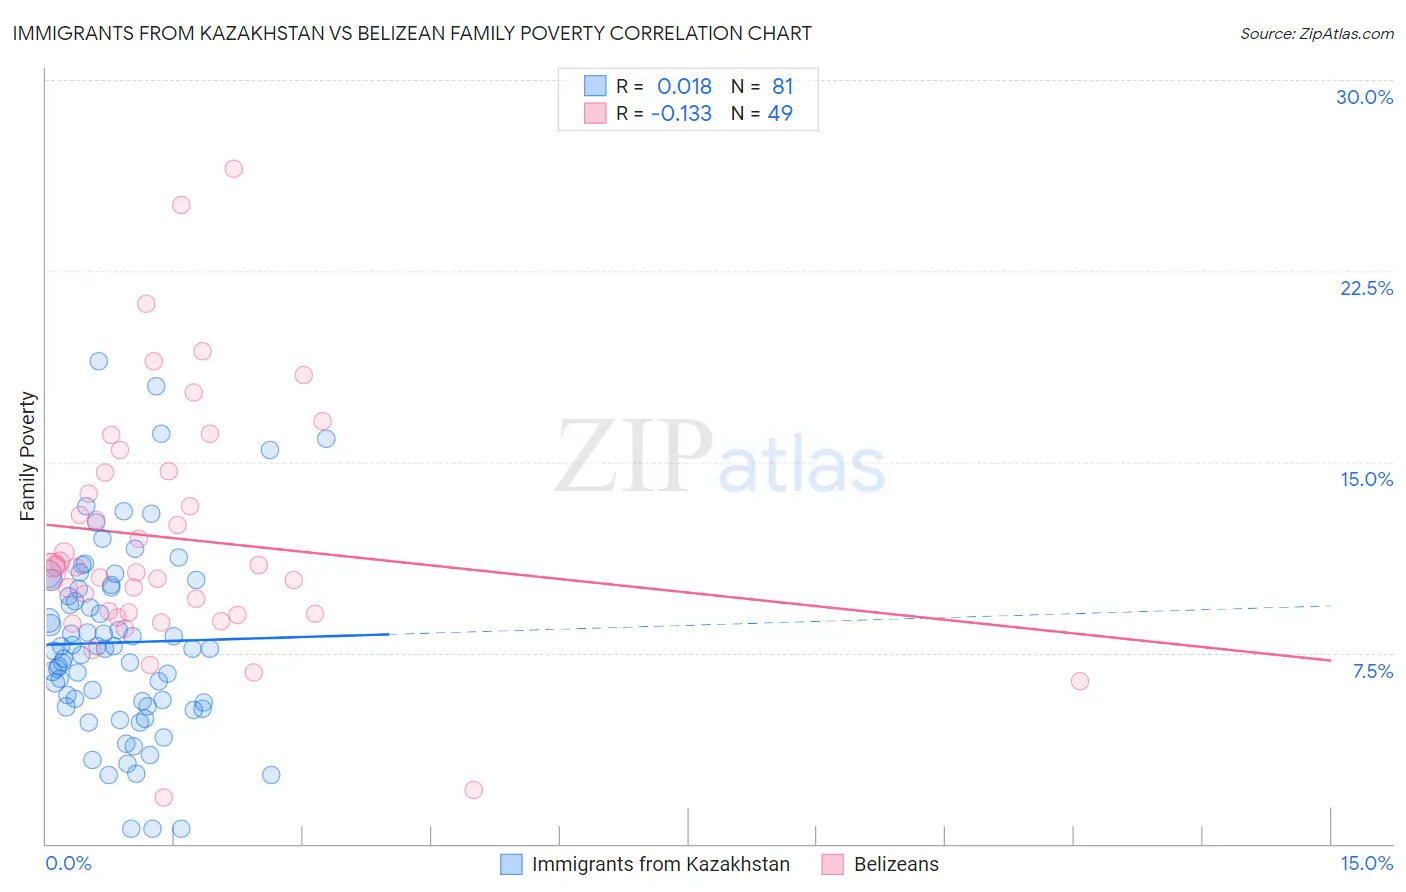 Immigrants from Kazakhstan vs Belizean Family Poverty